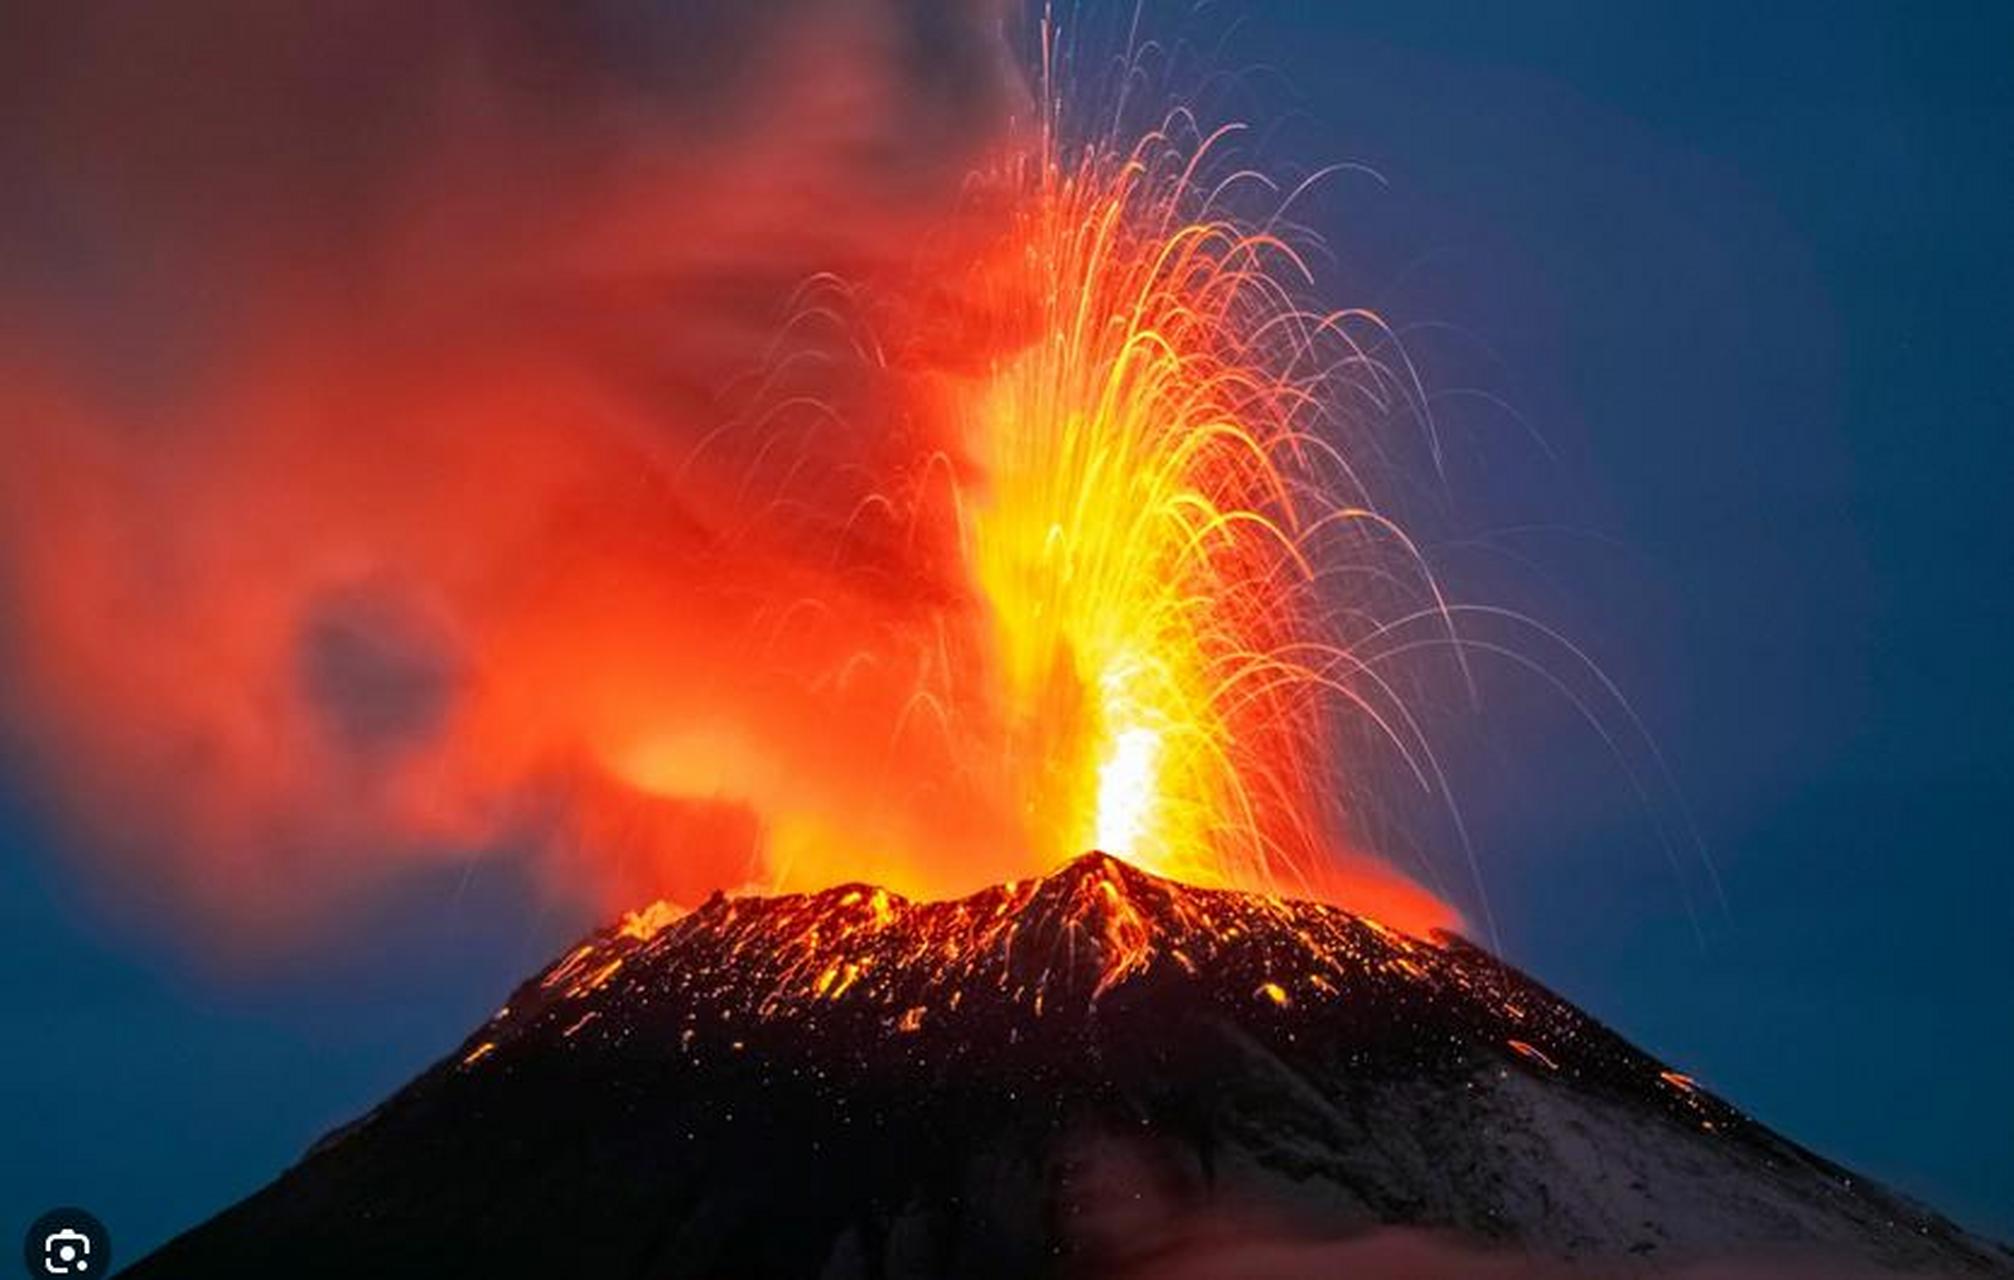 火山喷发事件:近日,位于墨西哥的第二高火山波波卡特佩特火山喷出大量